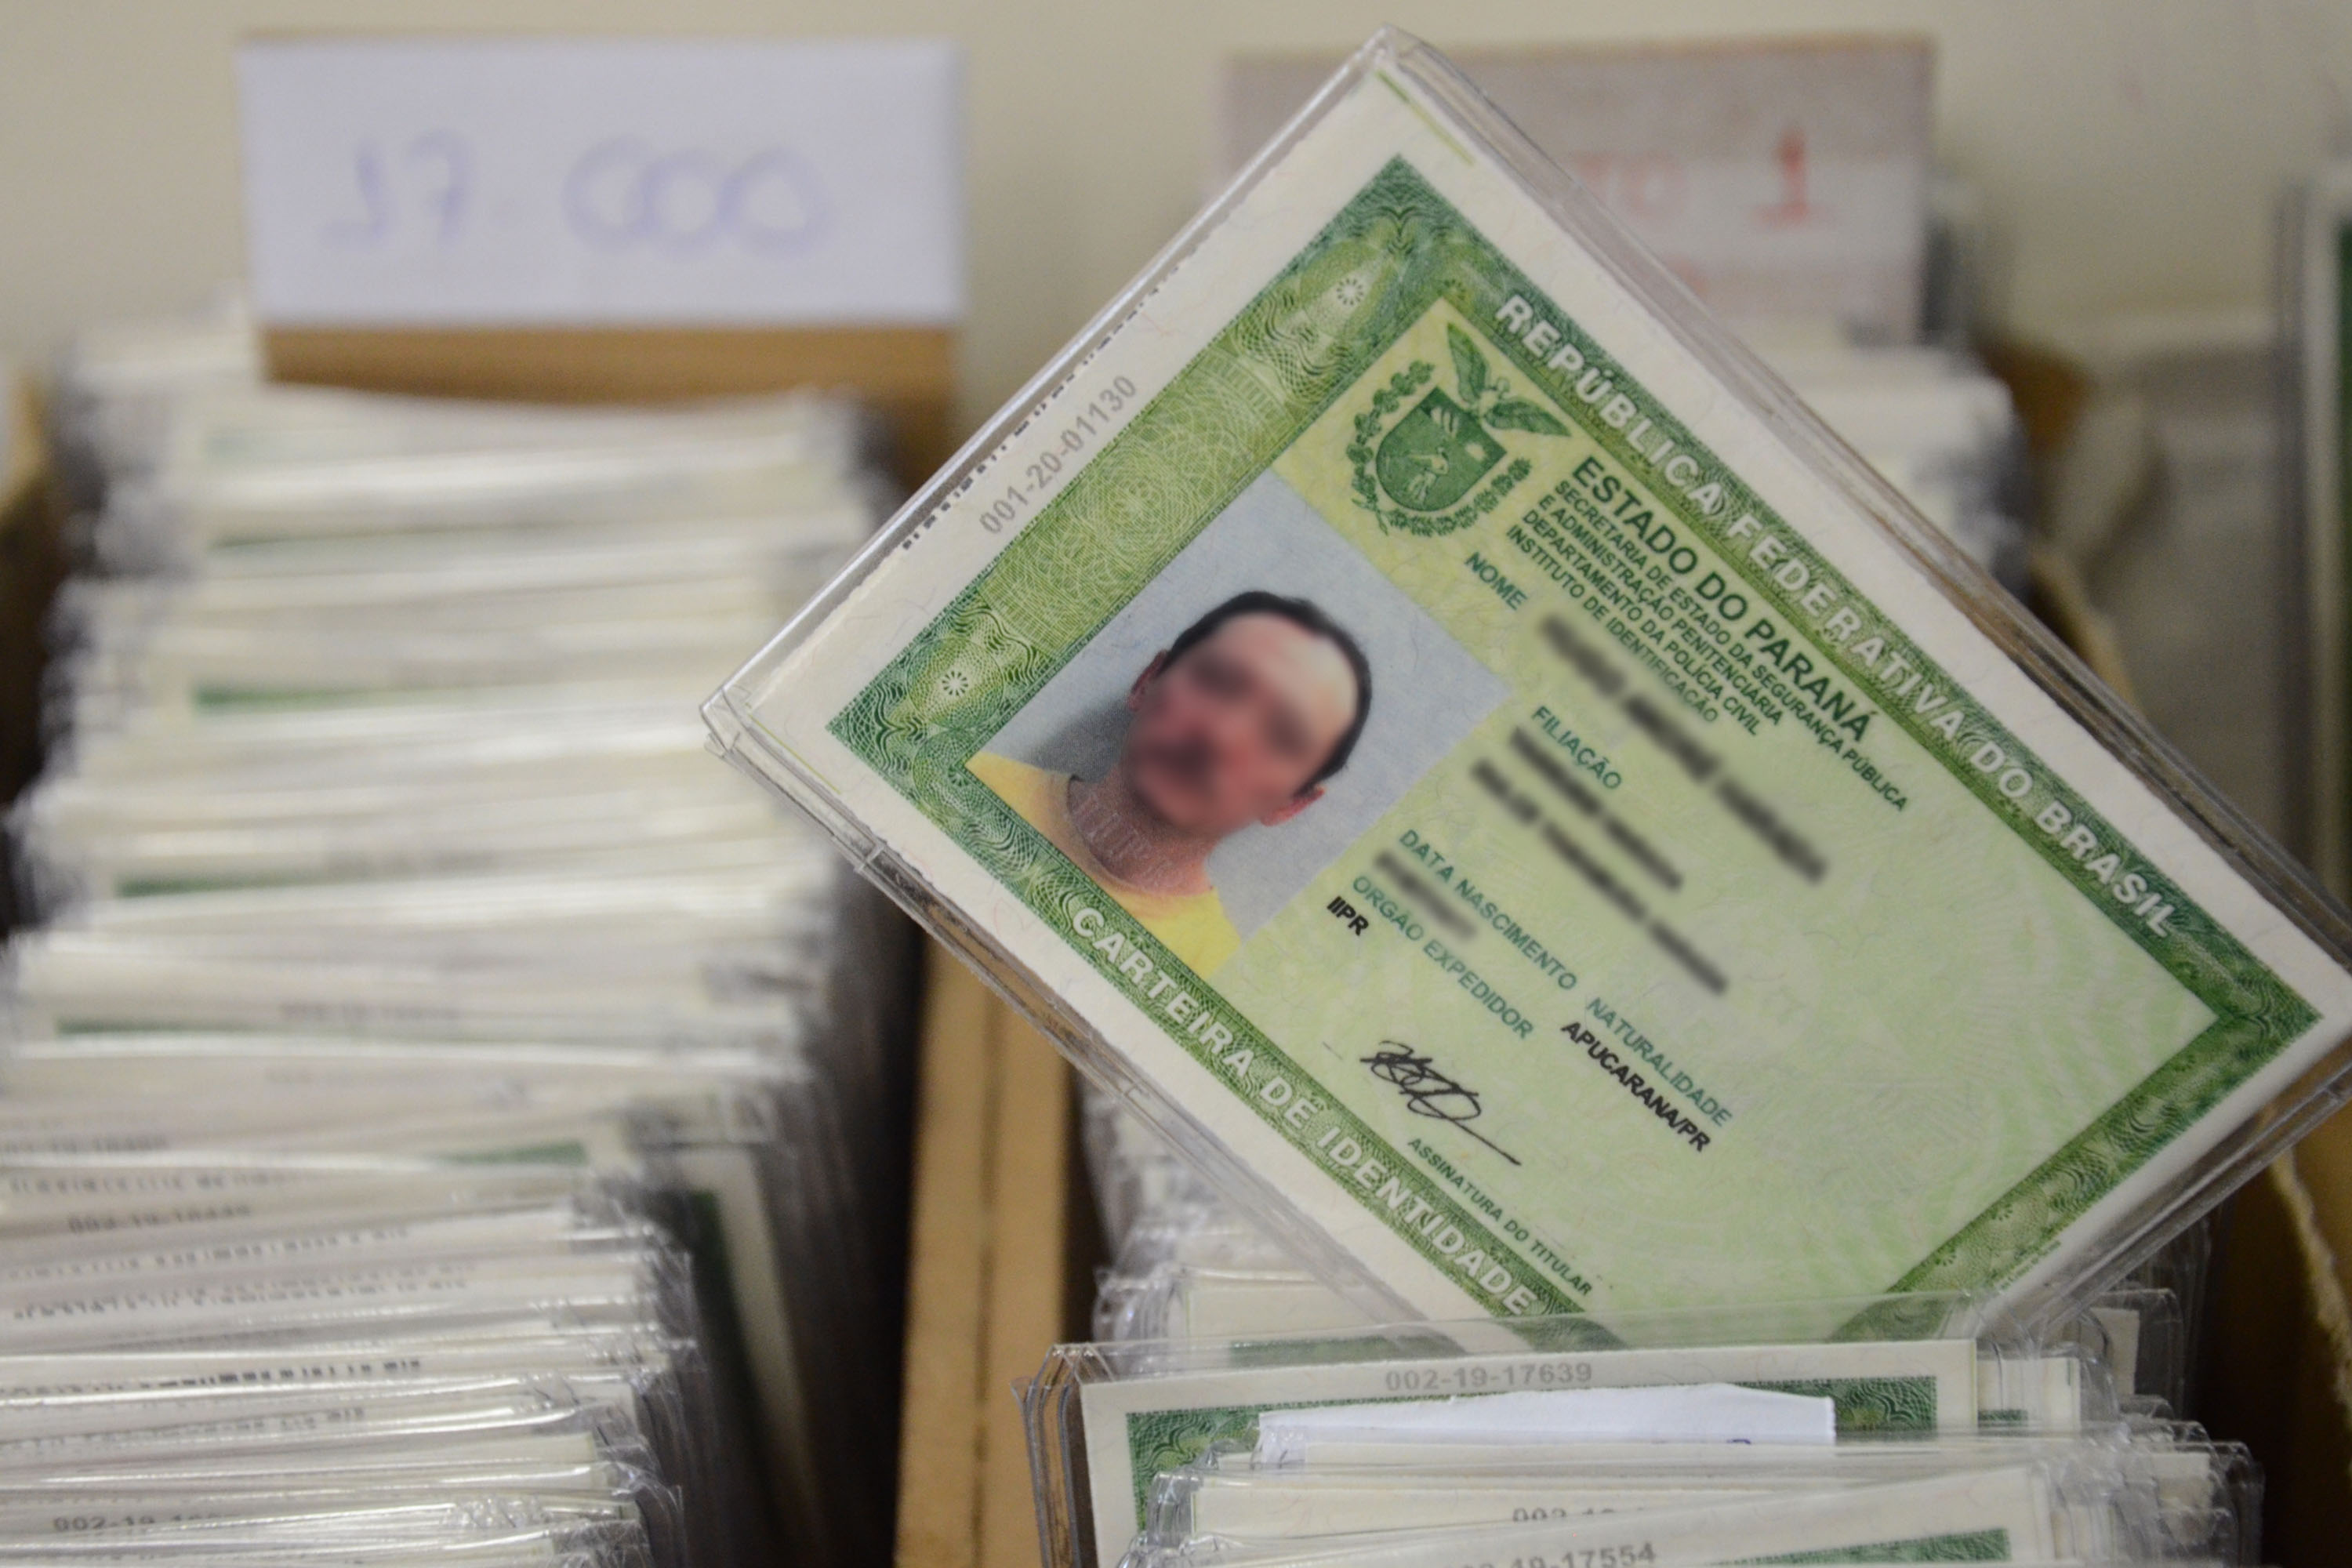 Carteiras de identidade já são encaminhadas na Operação RS Verão Total -  Secretaria da Segurança Pública